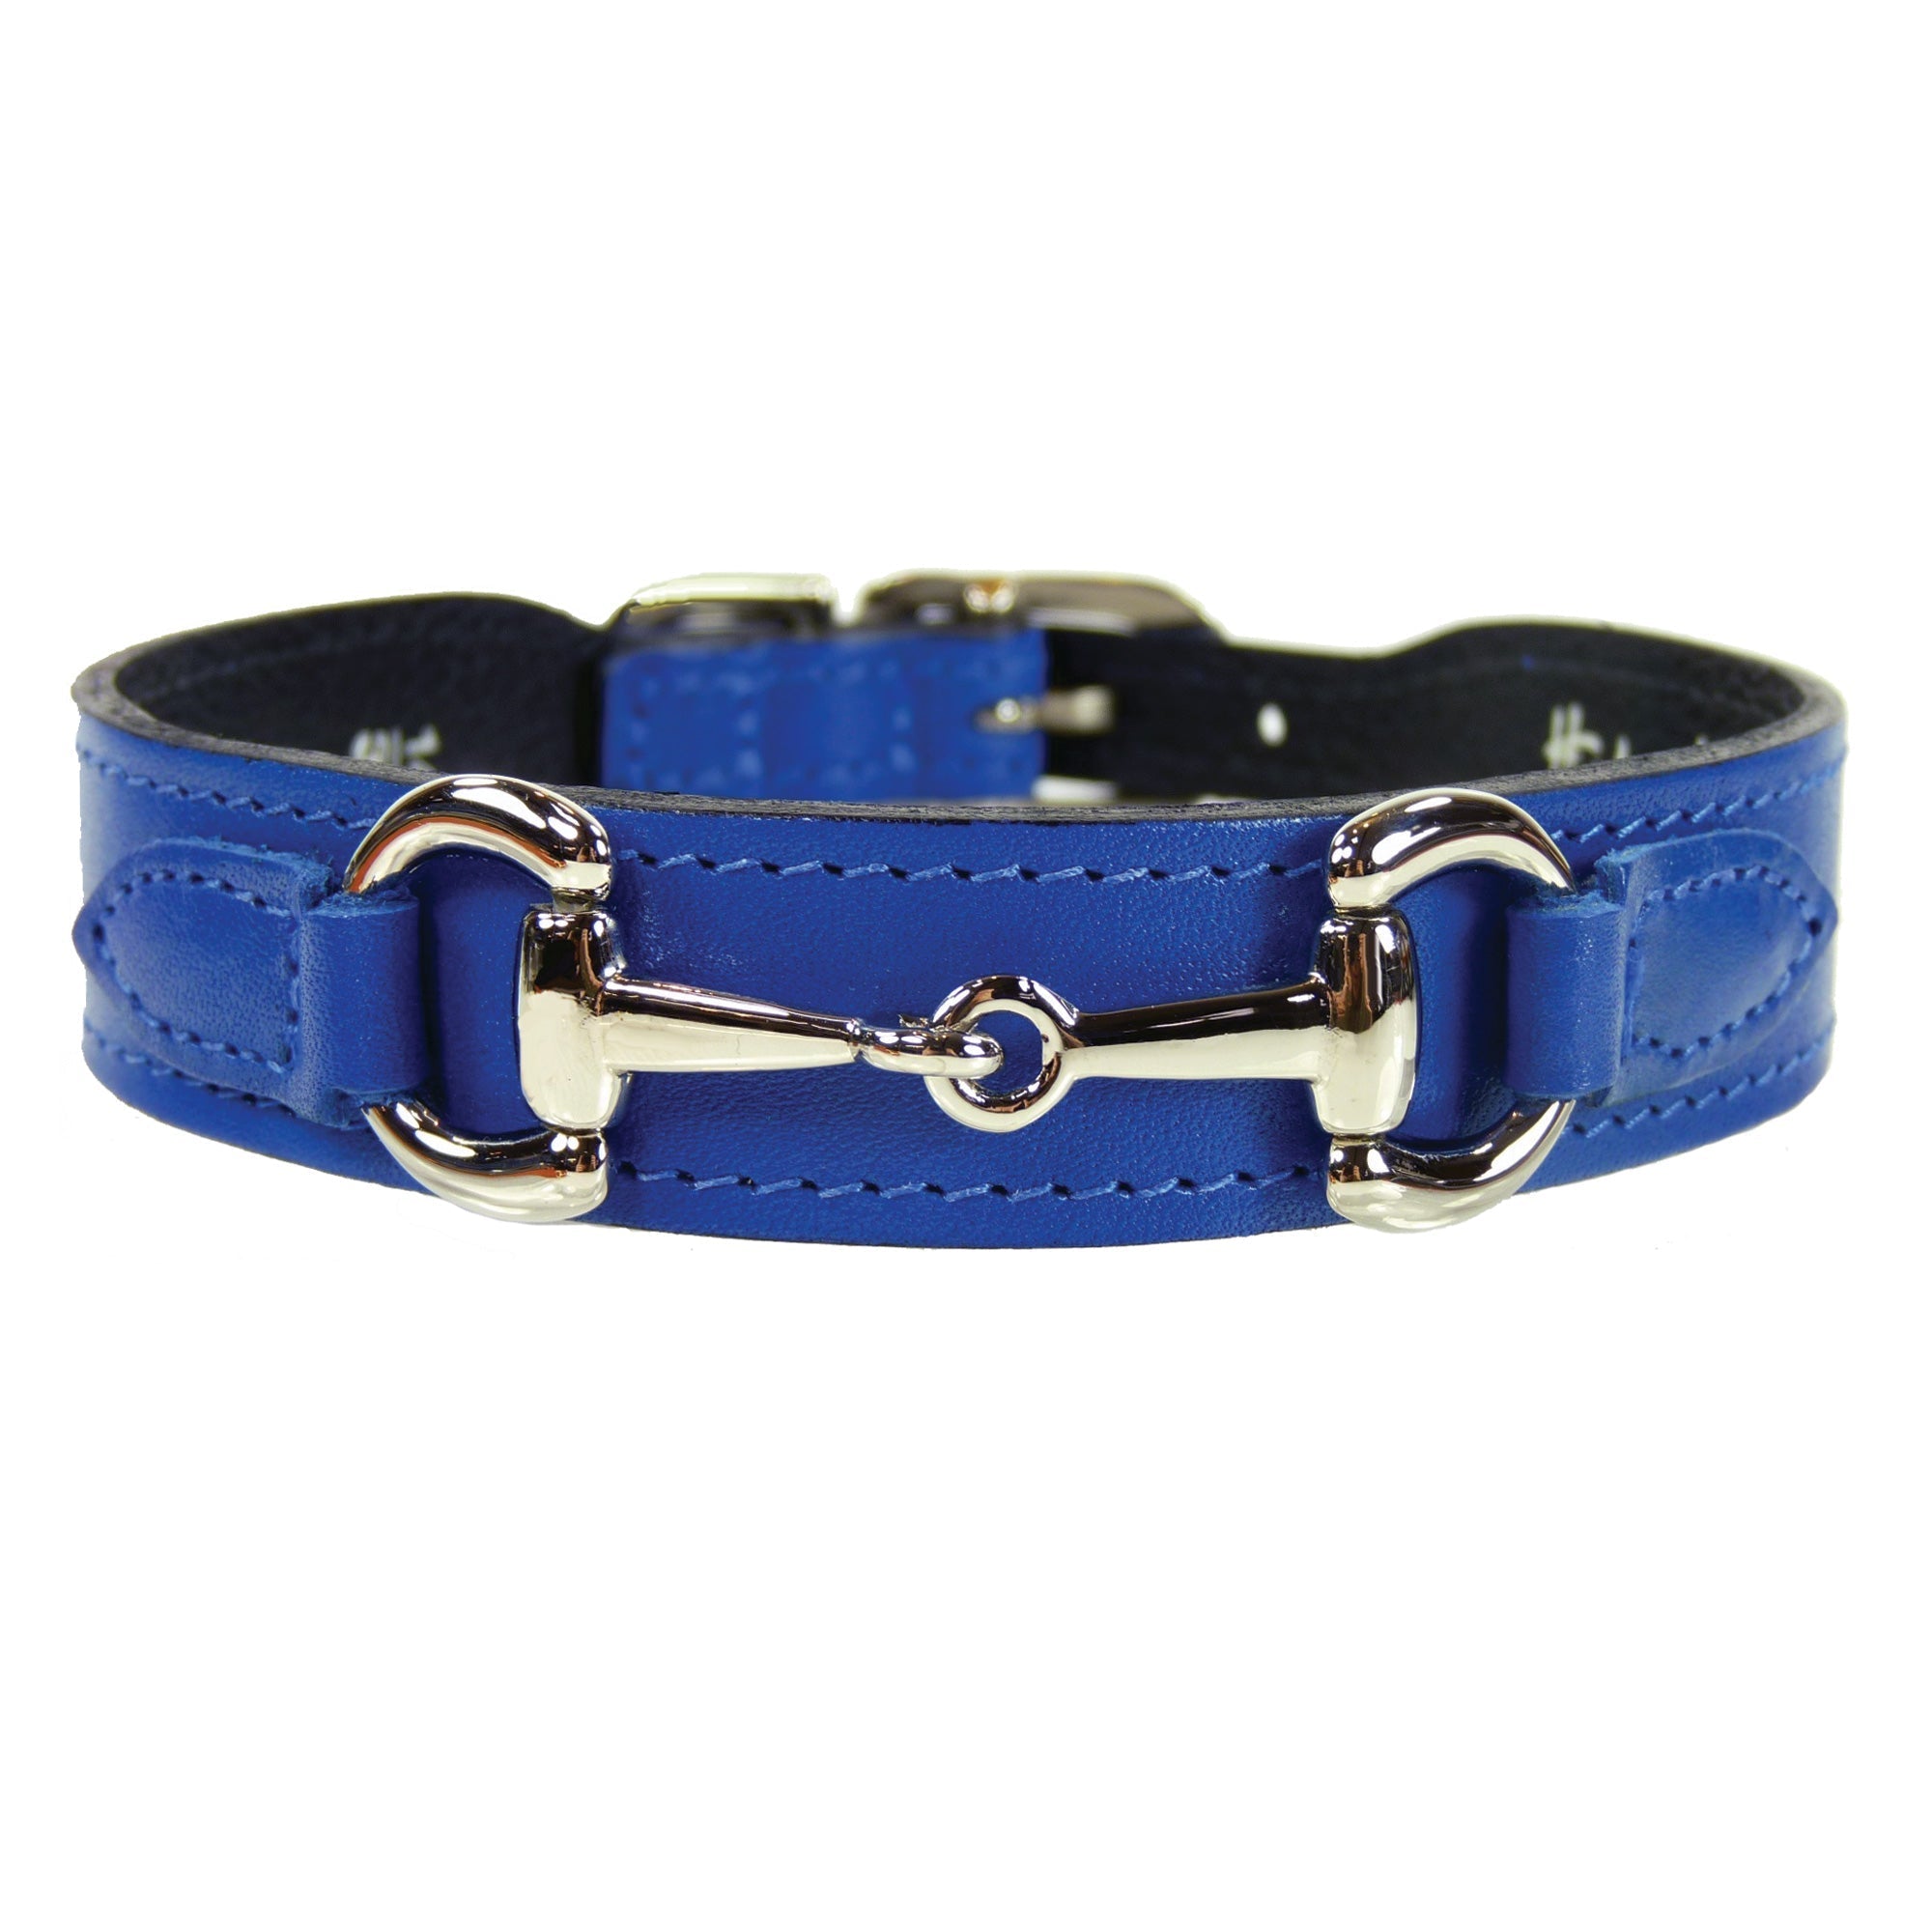 Belmont Dog Collar in Cobalt Blue & Nickel